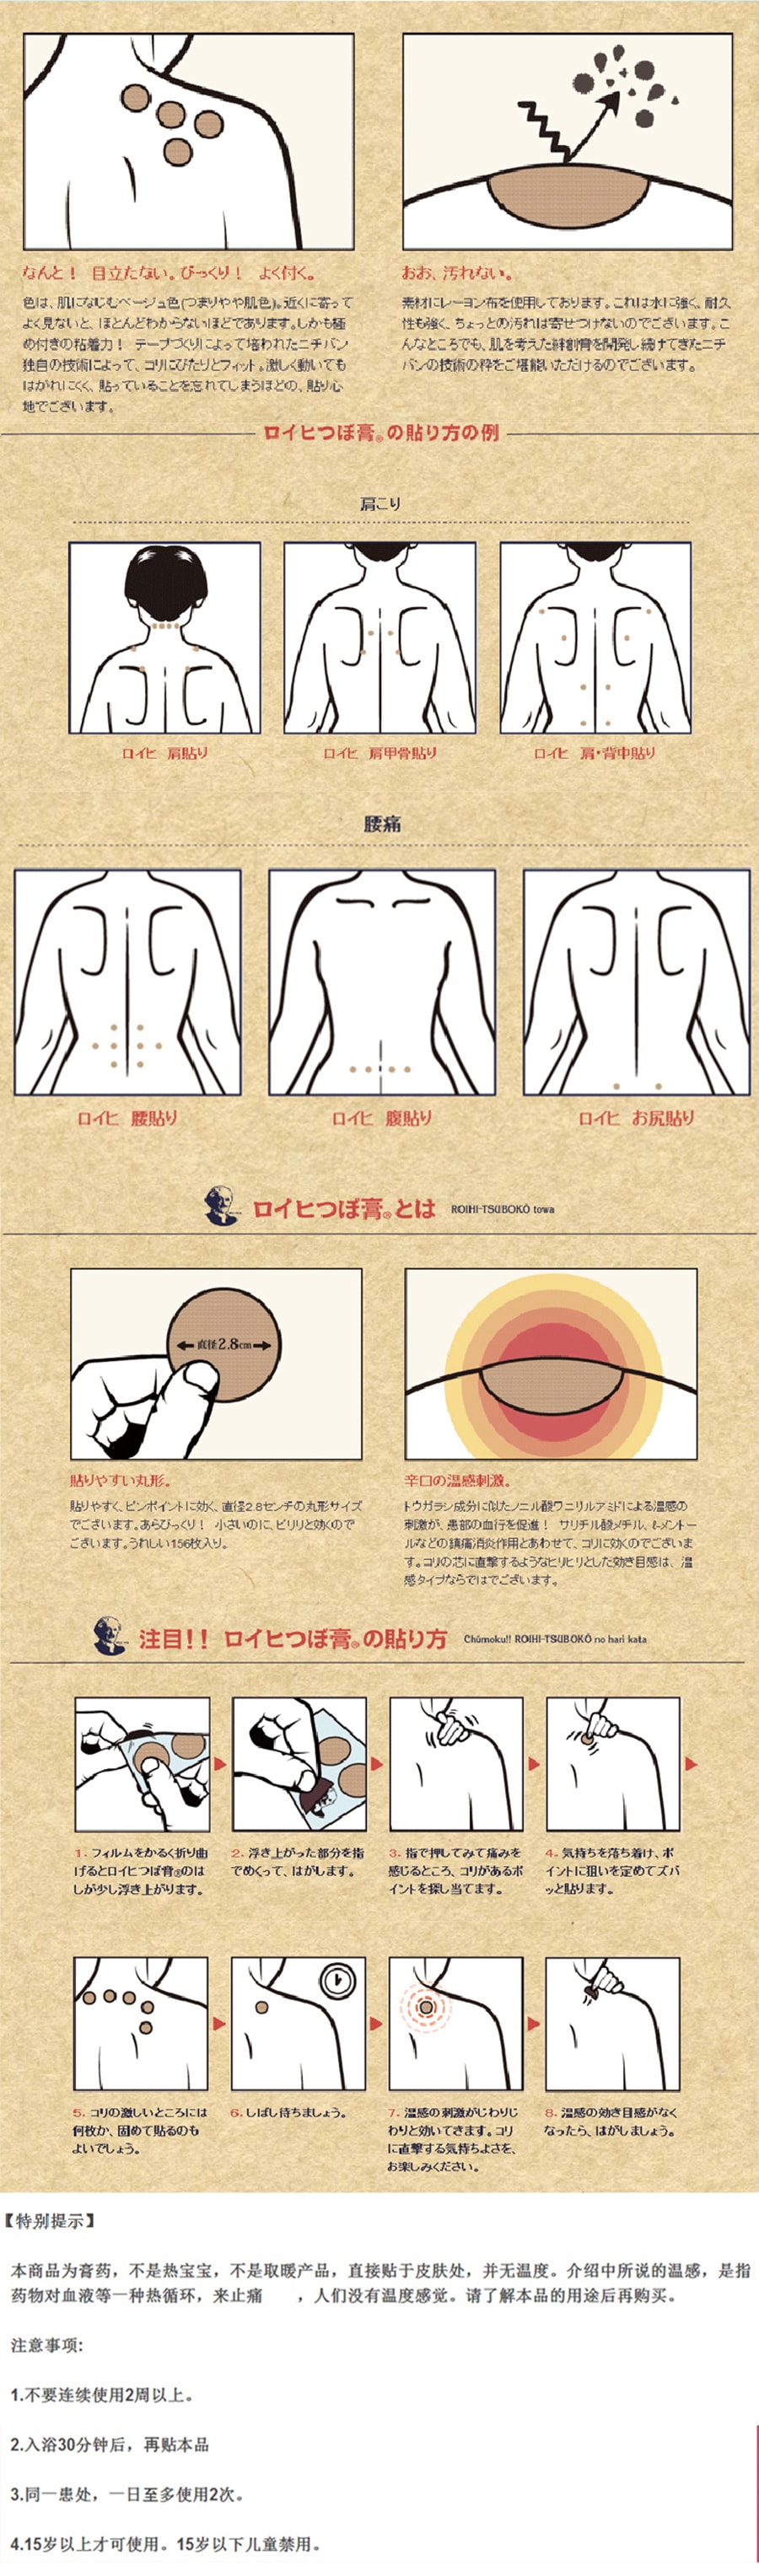 【日本直郵】NICHIBAN 老人頭膏藥貼 風濕痛關節痛肩頸痛腰痛鎮痛貼 12枚